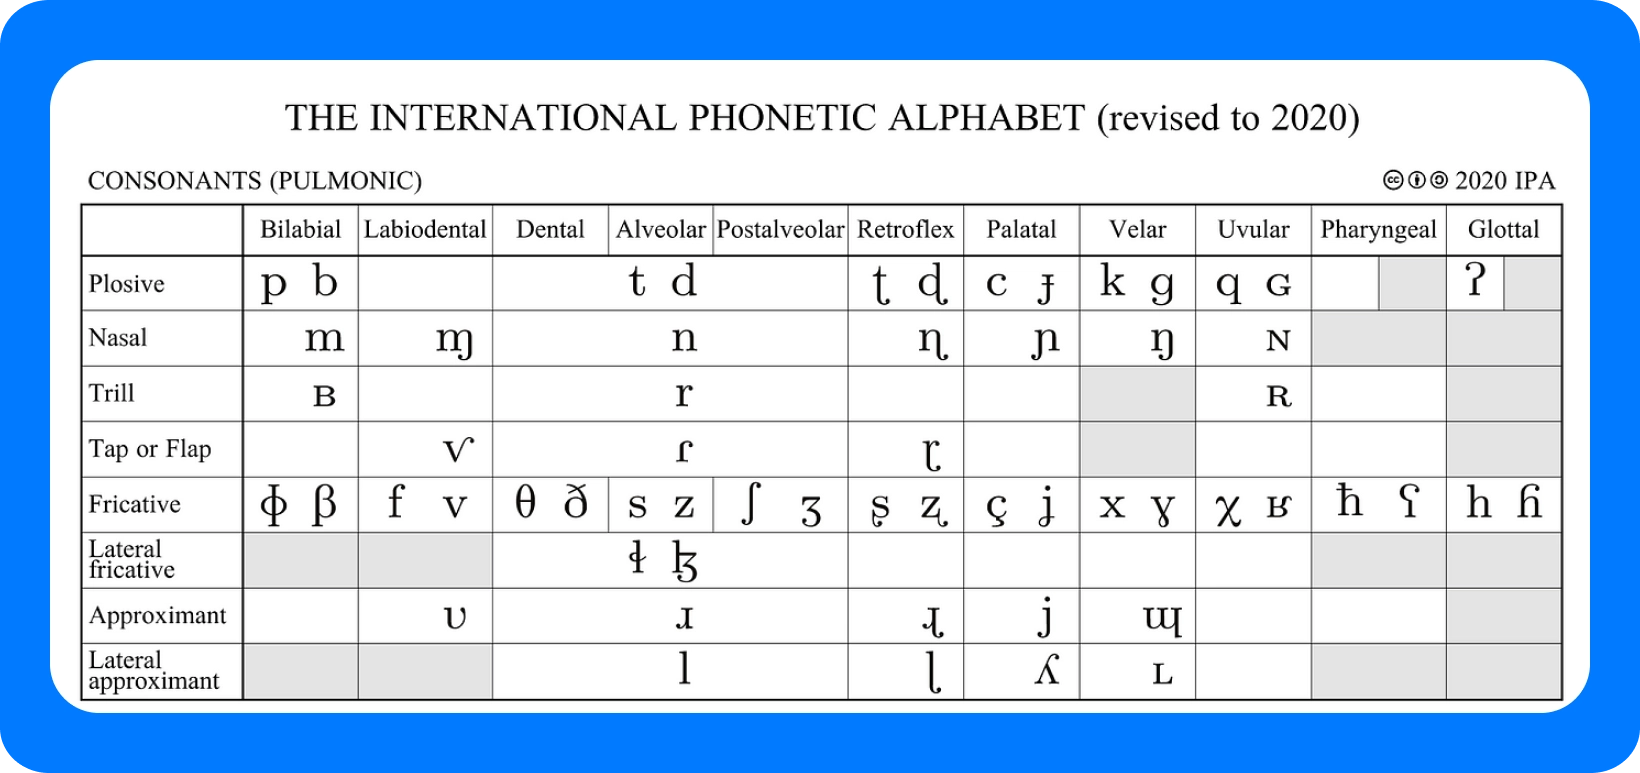 Таблица международного фонетического алфавита для согласных, пересмотренная в 2020 году, с подробным описанием точек артикуляции.